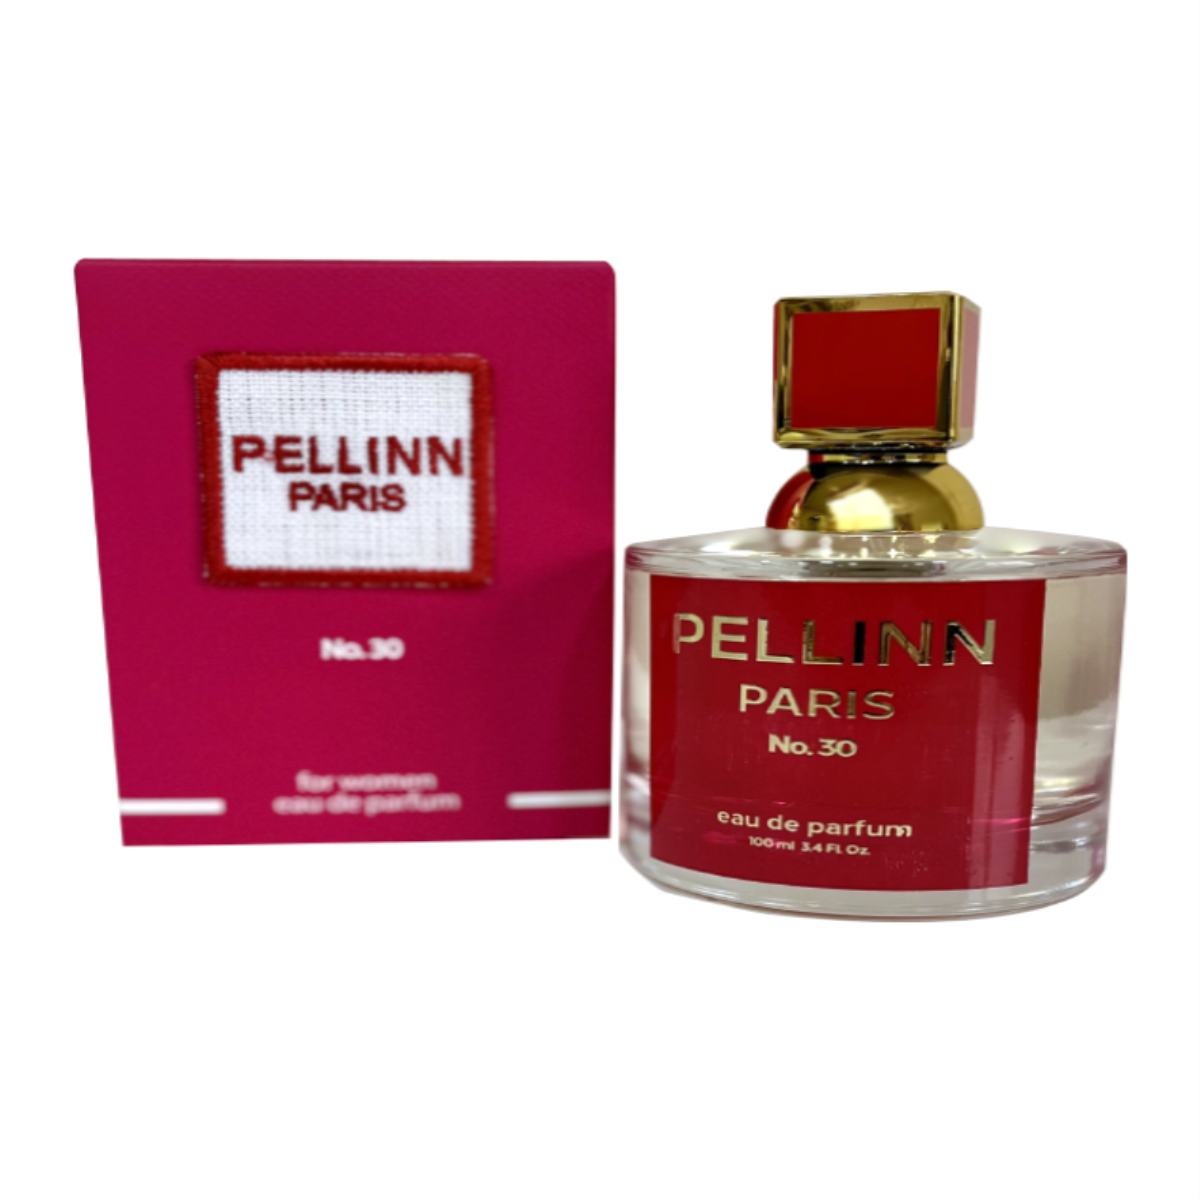 Pellinn Paris No.30 Odunsu ve Çiçeksi Kadın EDP Parfüm 100 ml  Pellinn Paris Parfüm